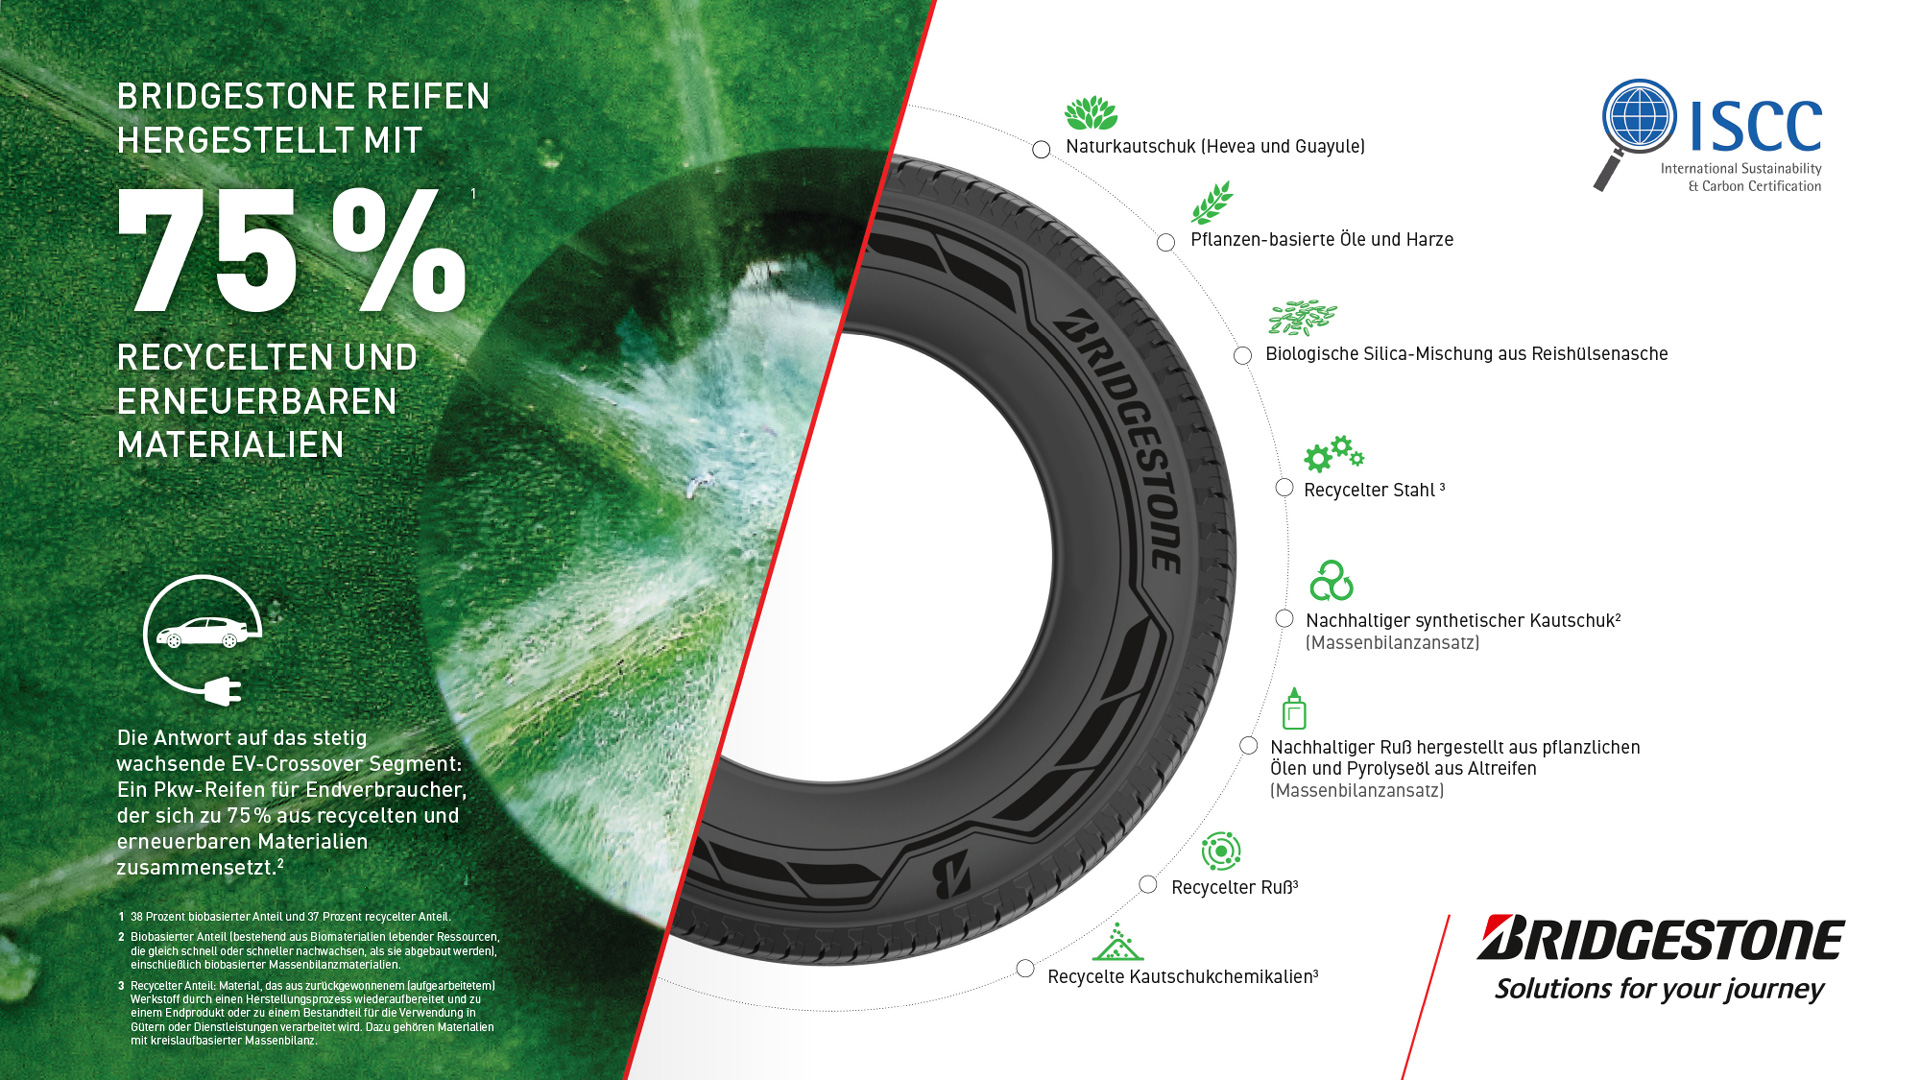 Bridgestone entwickelt Reifen aus 75 Prozent recycelten und erneuerbaren Materialien